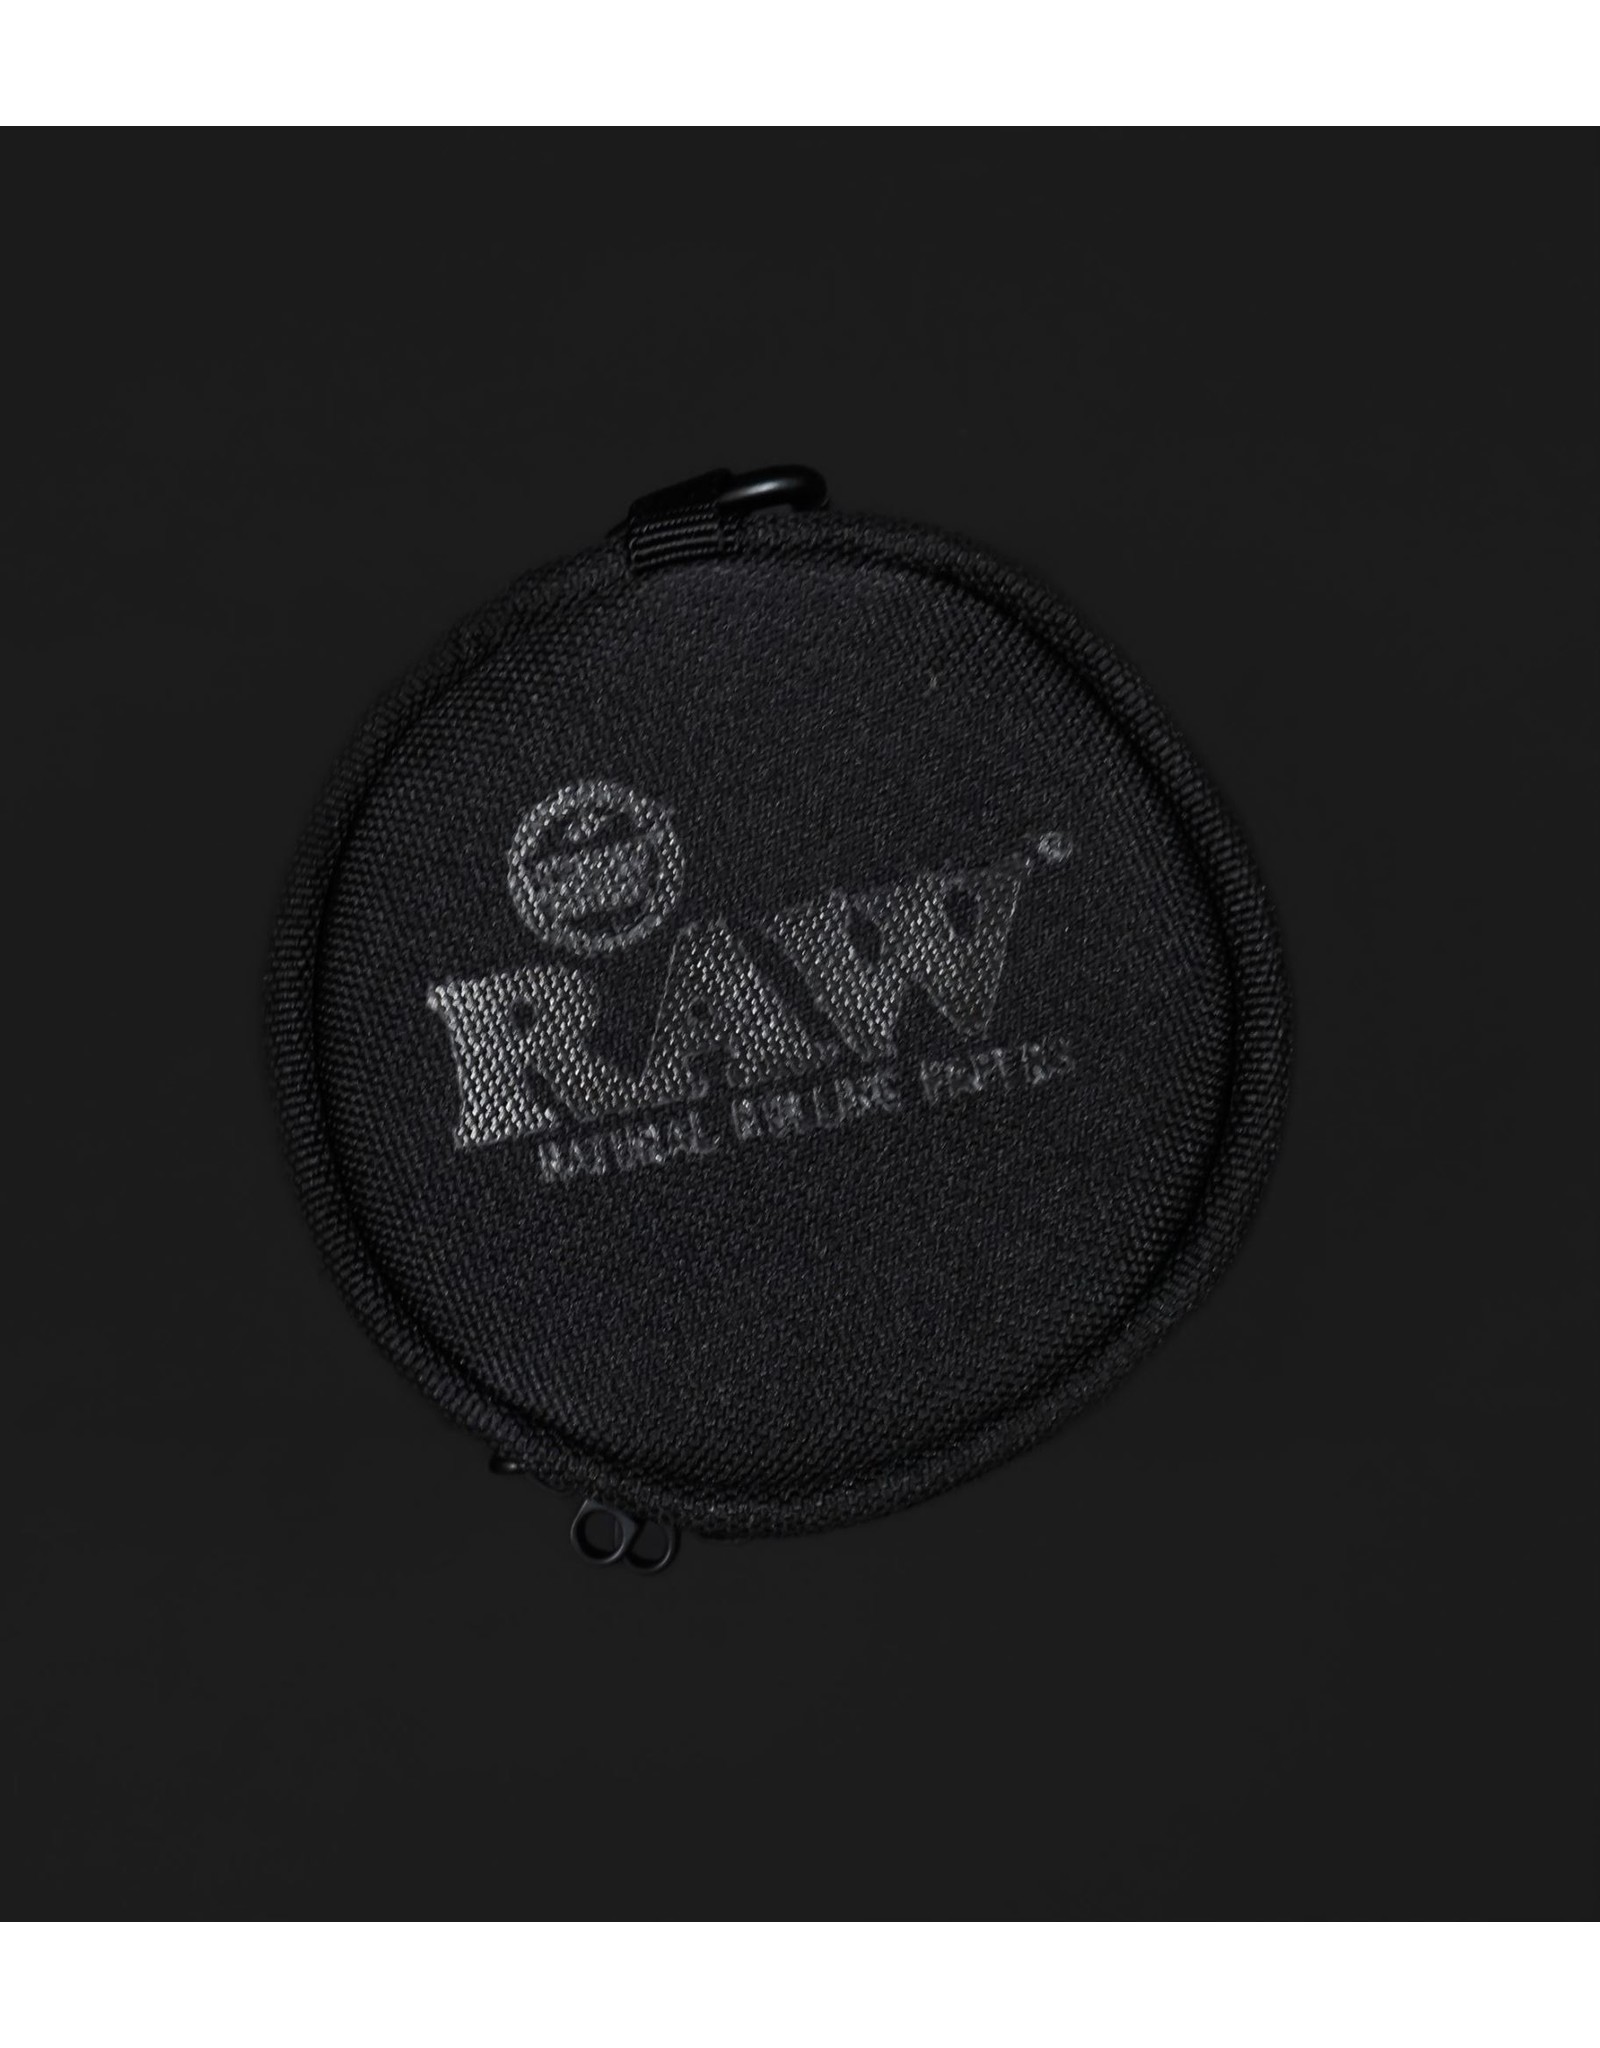 Raw Raw Smell-Proof 10oz Jar & Cozy w/ Lock